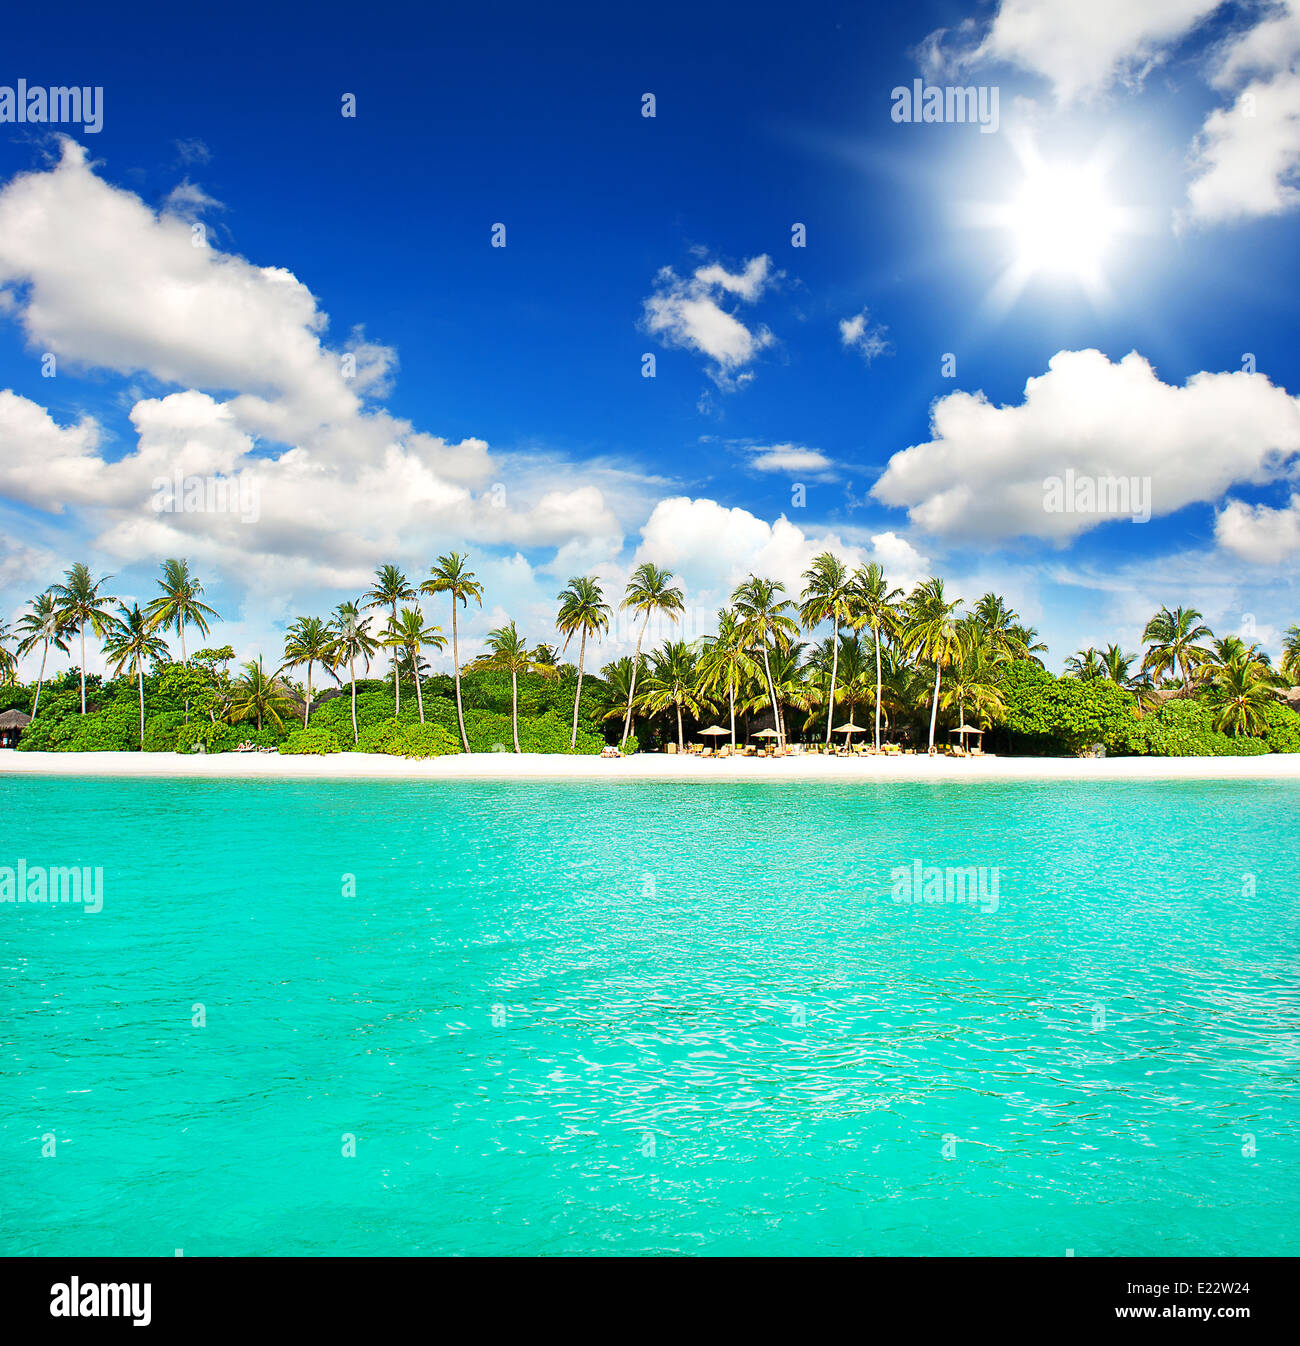 Plage de l'île tropicale. Paysage avec palmiers vert et ciel bleu ensoleillé Banque D'Images